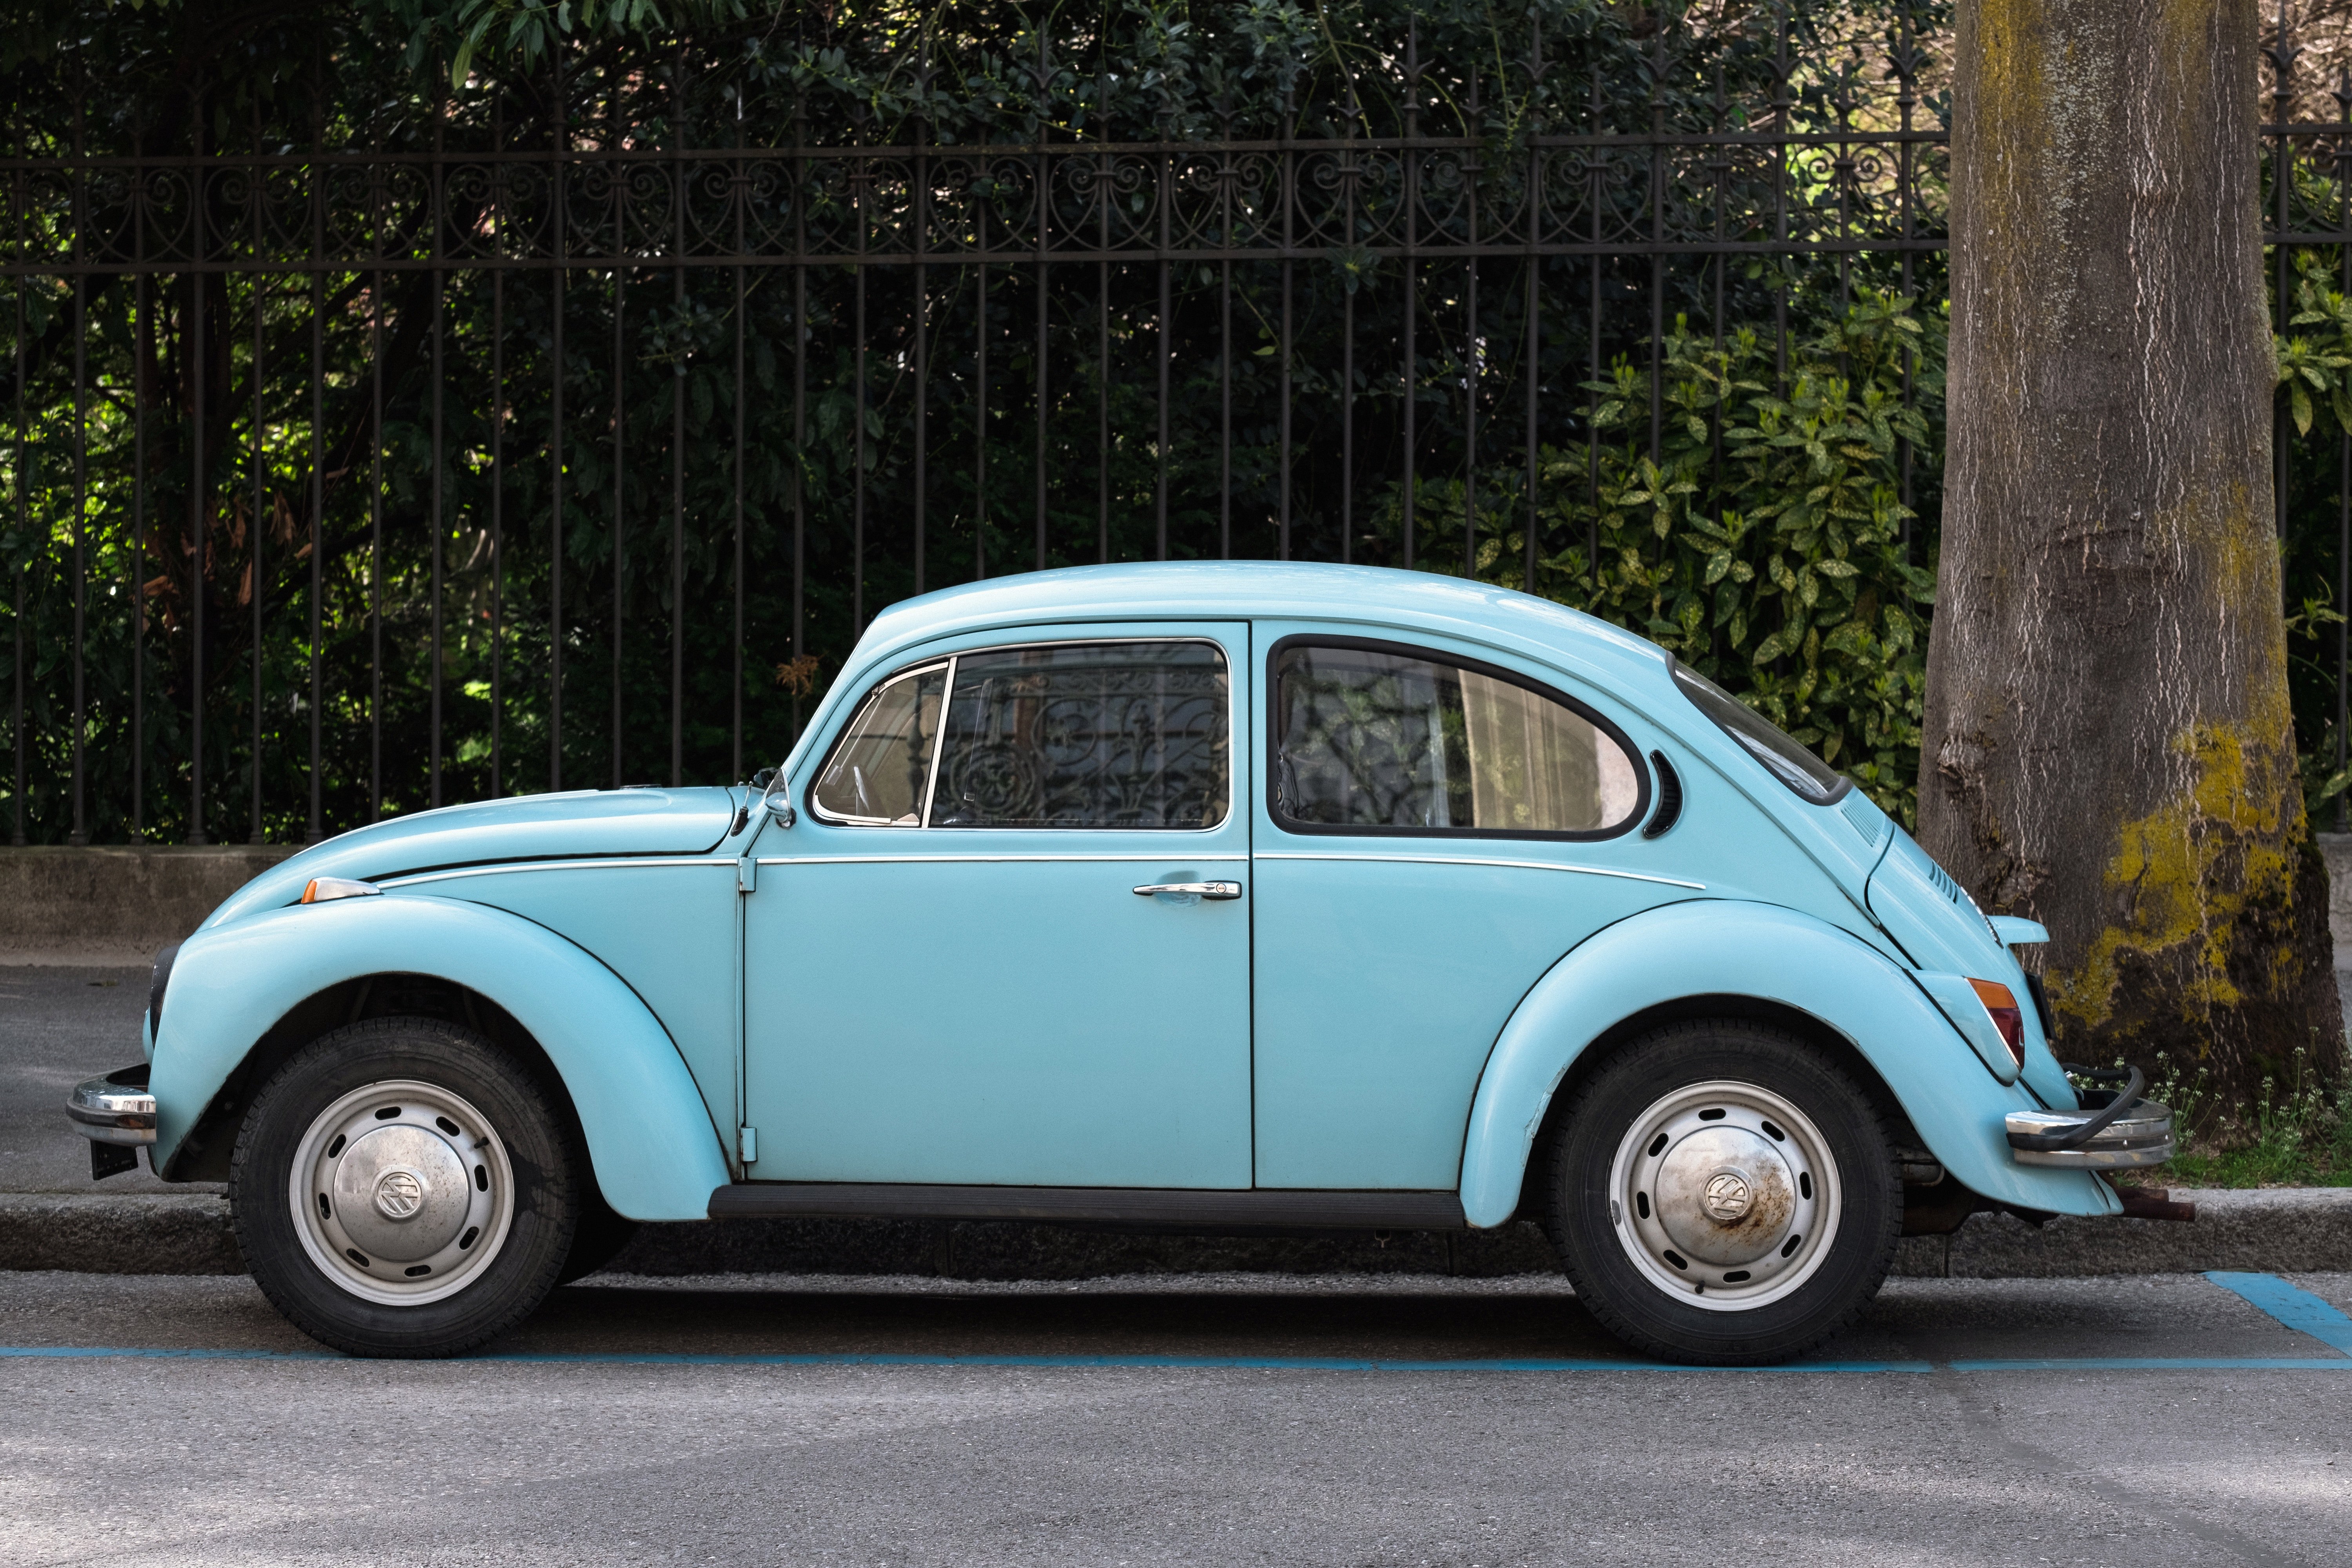 A blue Volkswagen Beetle. | Source: Samuel Zeller/Unsplash